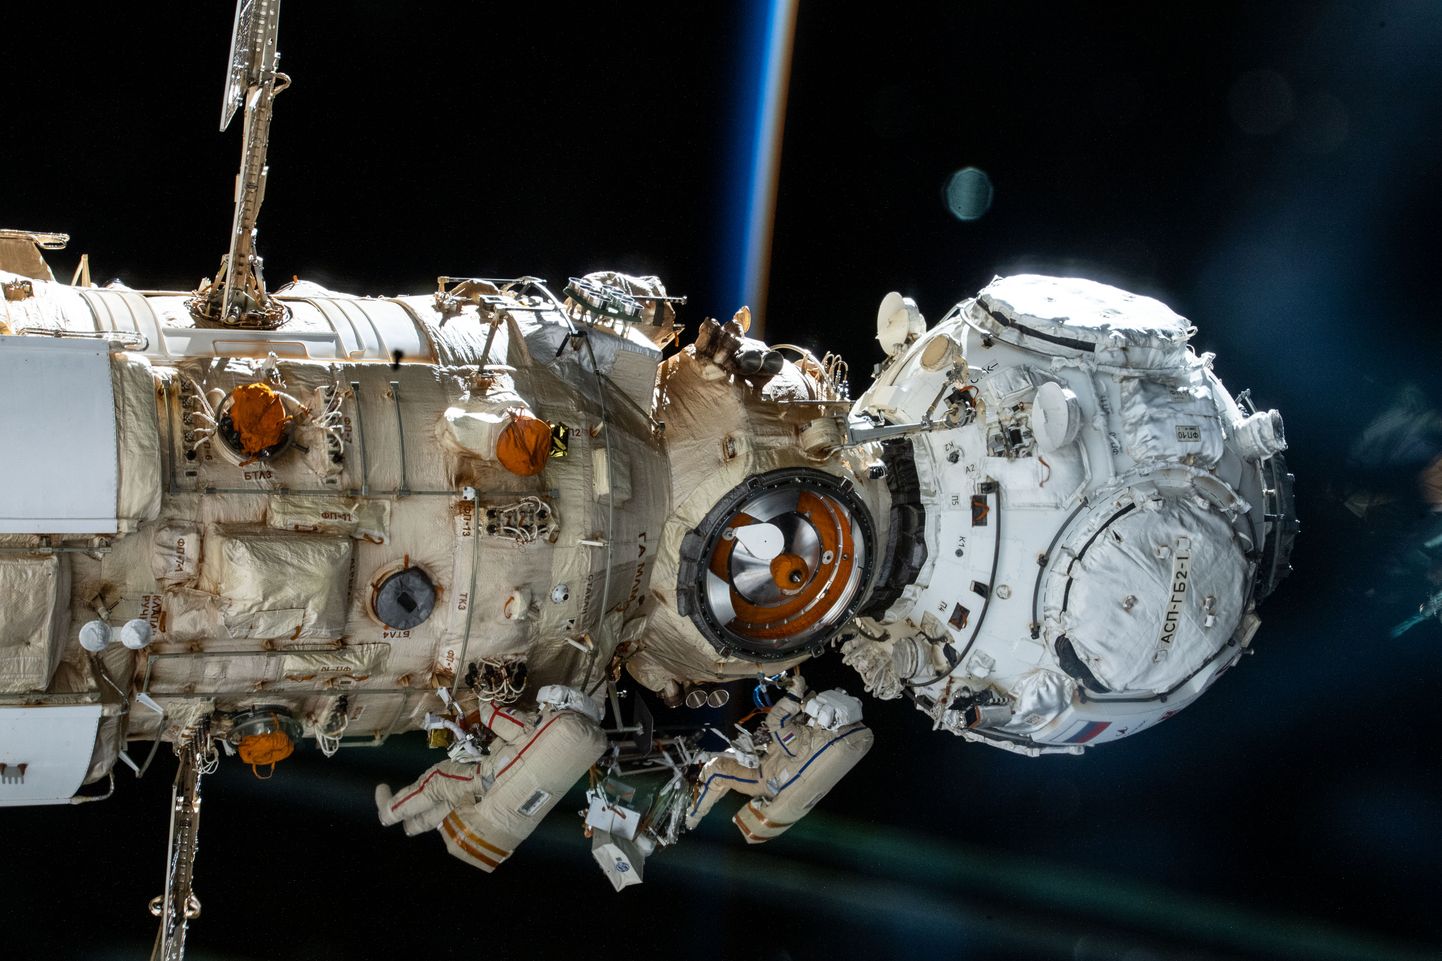 Venemaa kosmoseagentuuri Roskosmos kosmonaudid (vaskult) Anton Škaplerov ja Pjotr Dubrov kosmosekõnnil ISS-i Nauka mitmeotstarbelise laboratooriumi juures. Kosmosekõnd toimus 19. jaanuaril 2022 ning kestis seitse tundi ja üksteist minutit. Aju-uuring ei puudutanud neid kosmonaute